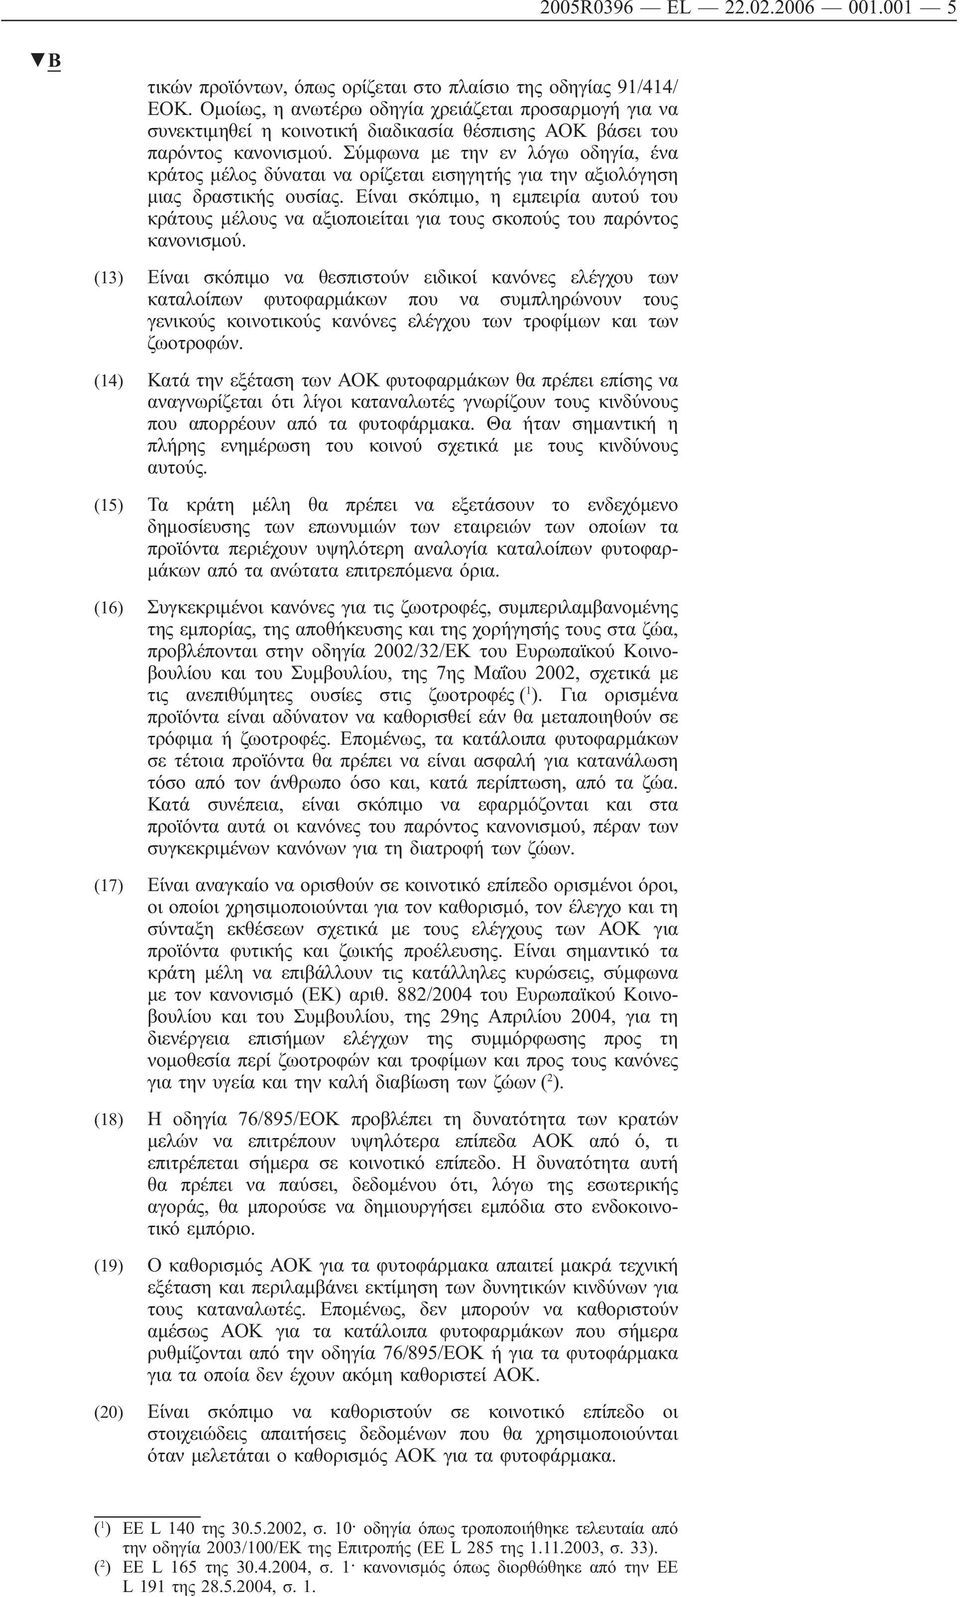 Σύμφωνα με την εν λόγω οδηγία, ένα κράτος μέλος δύναται να ορίζεται εισηγητής για την αξιολόγηση μιας δραστικής ουσίας.